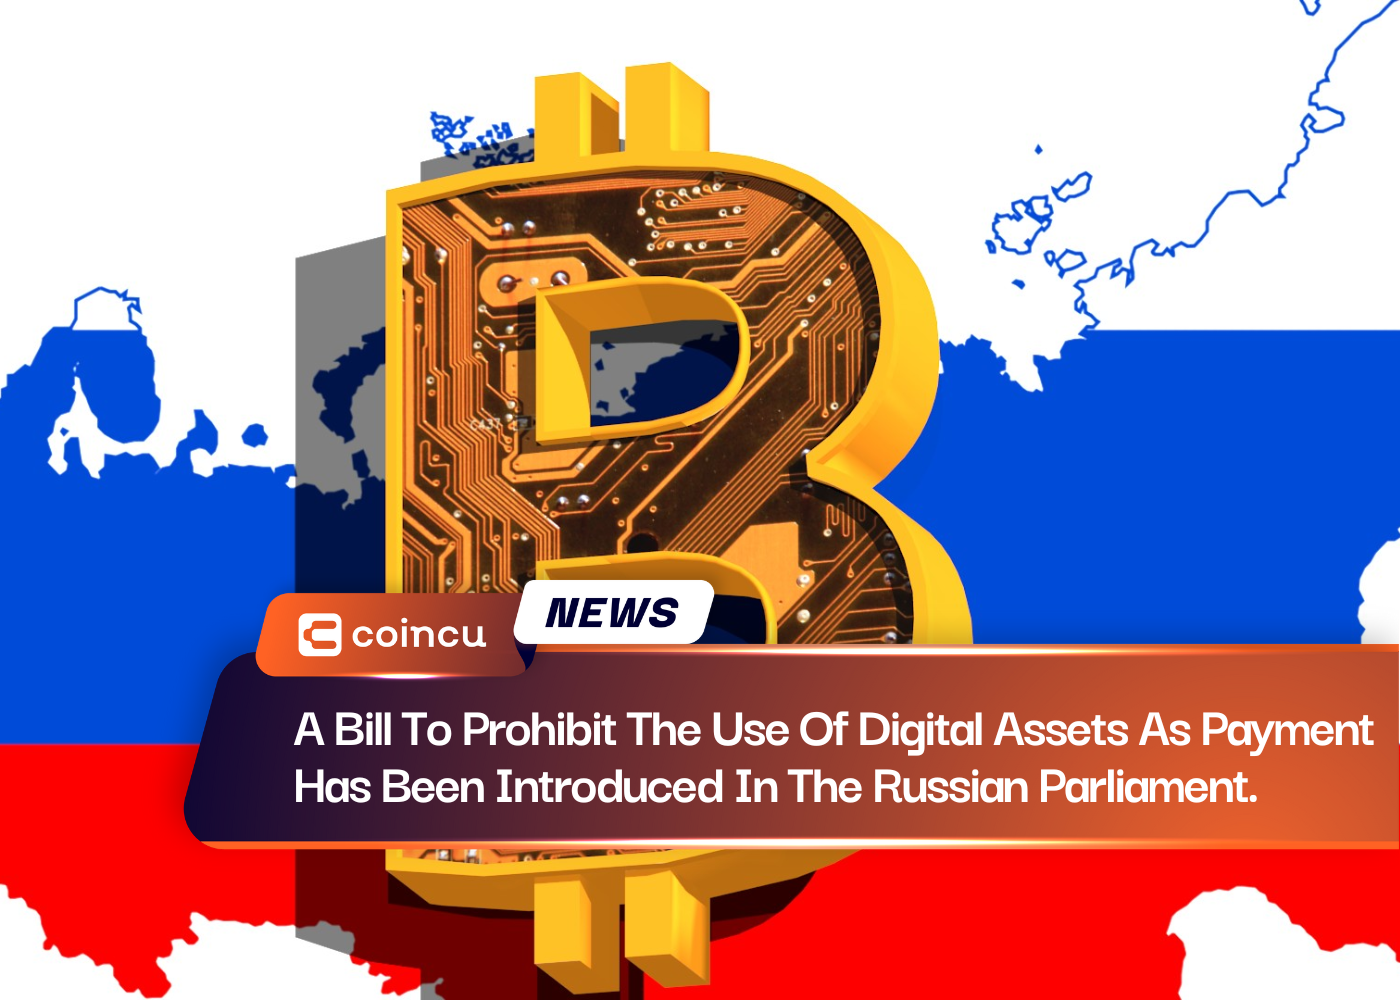 俄罗斯议会提出了一项禁止使用数字资产作为支付方式的法案。